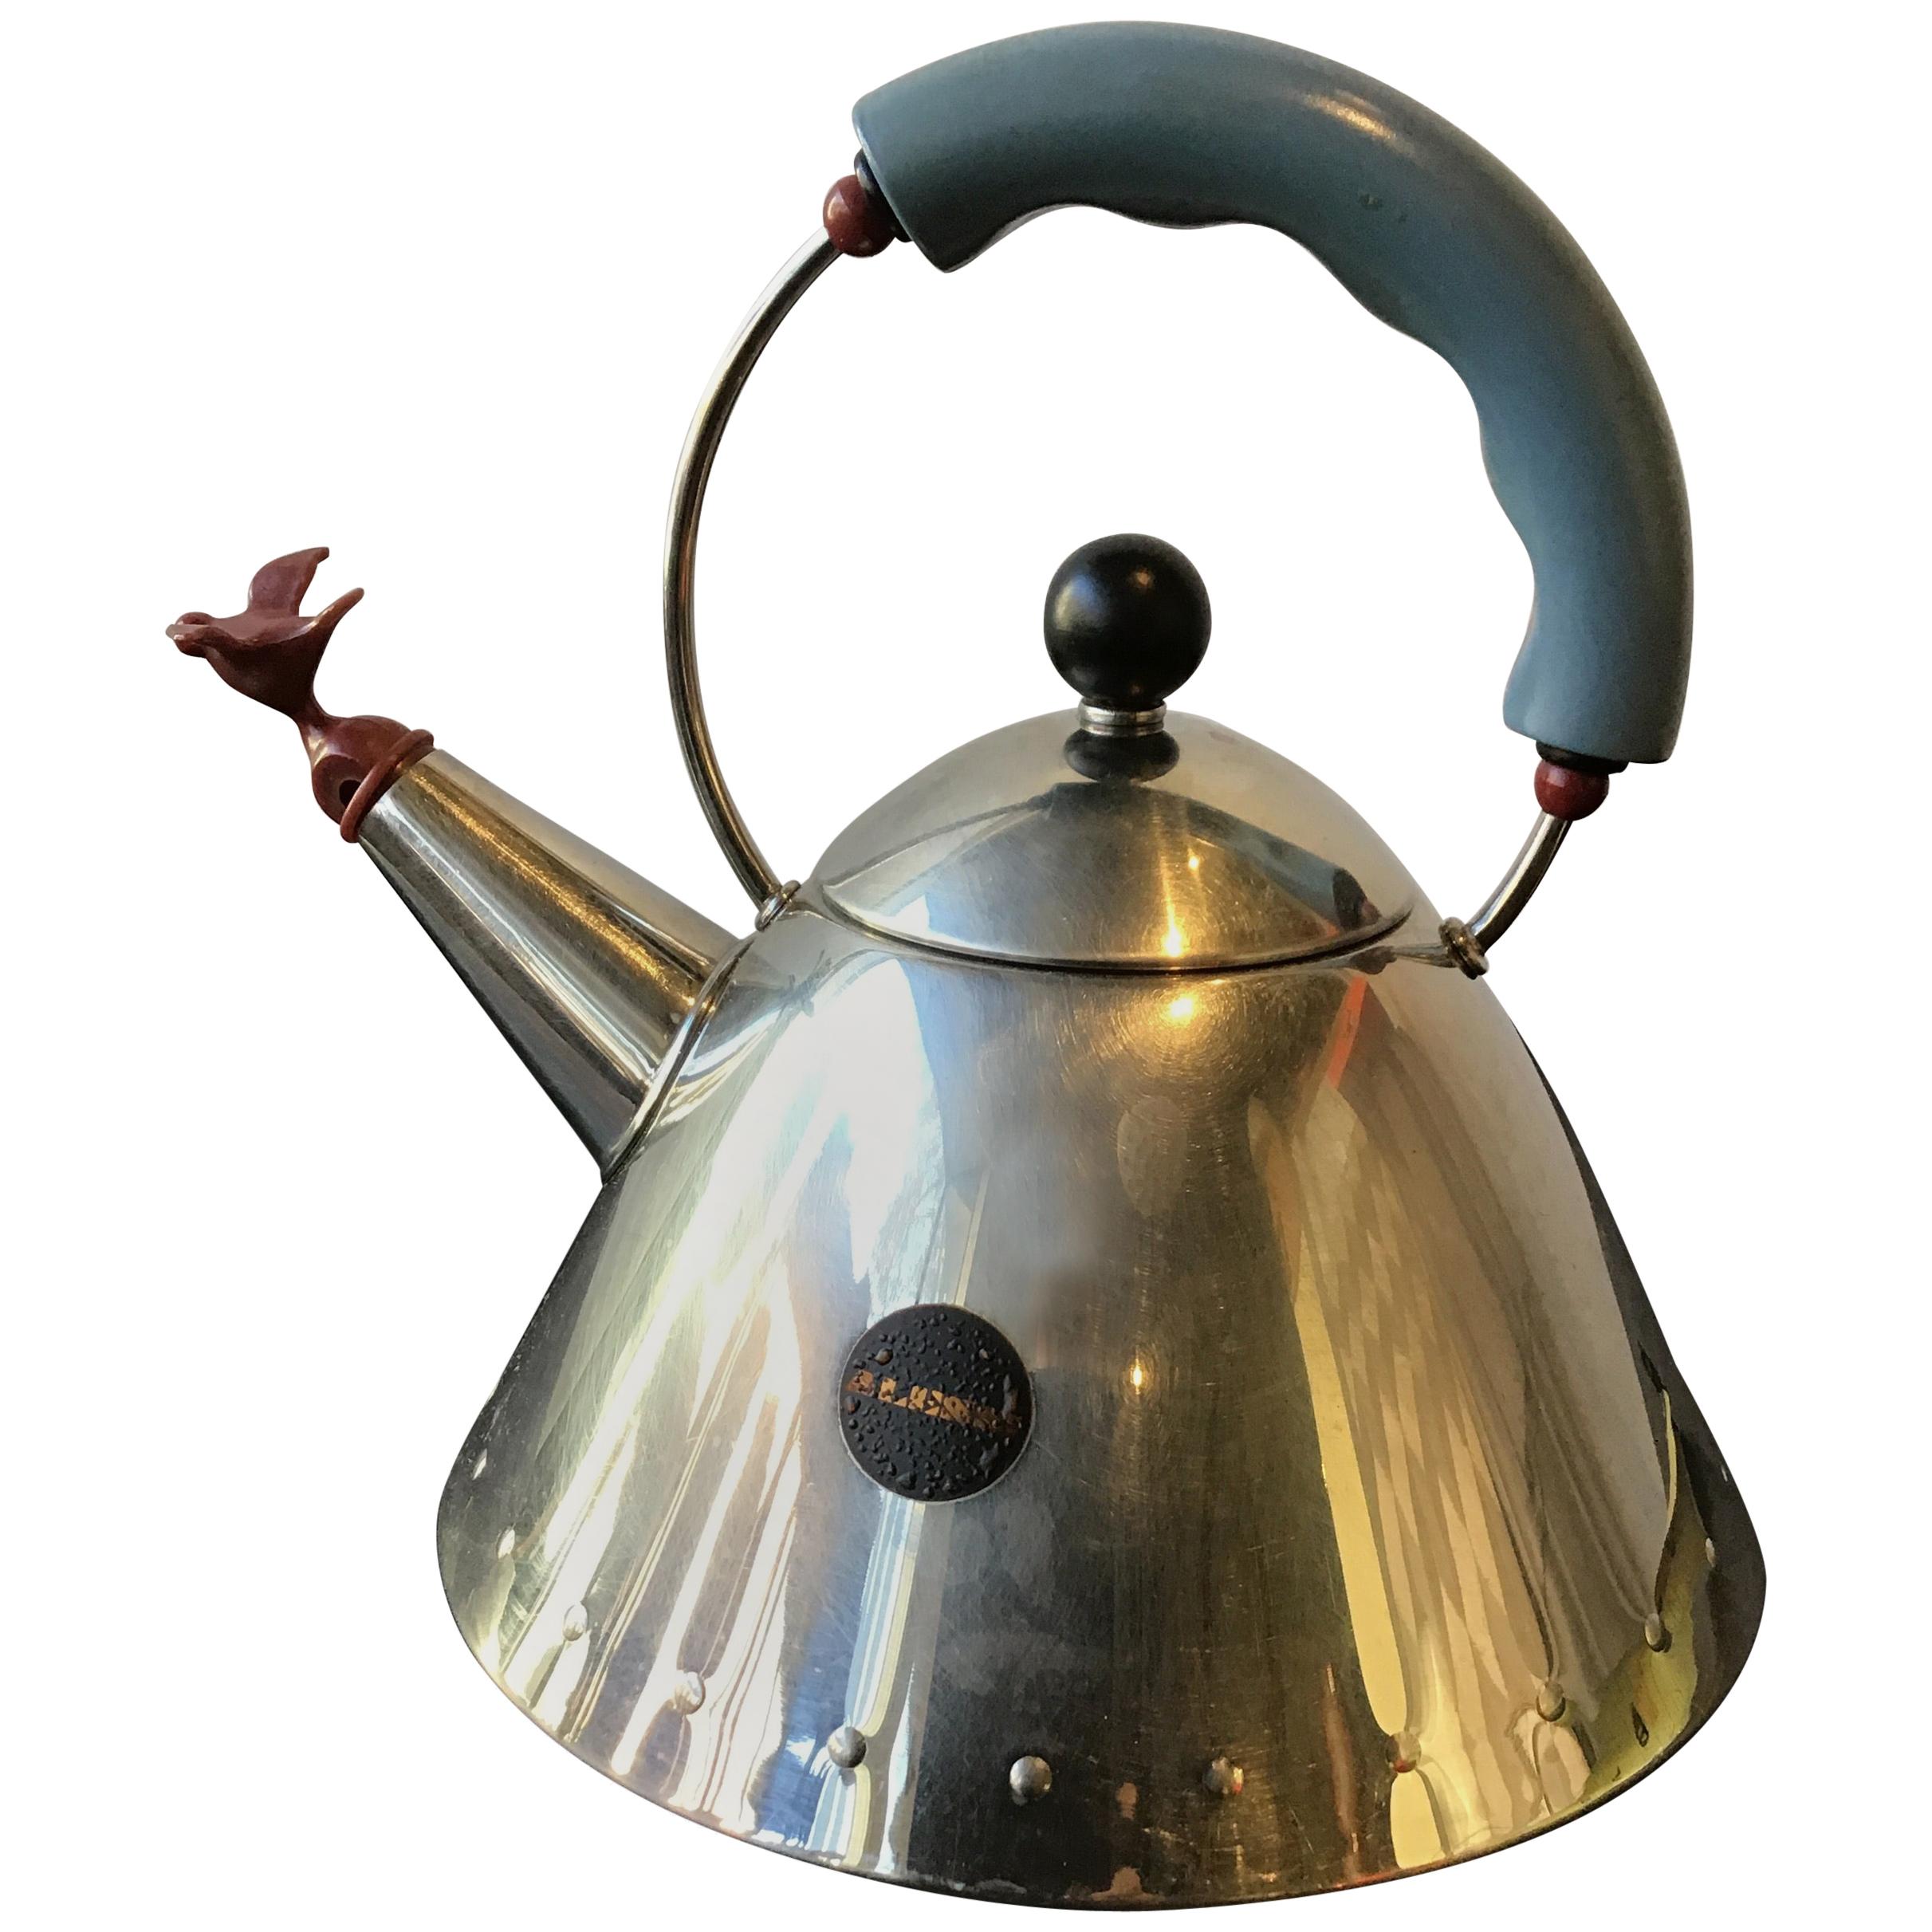 Alessi Tea Set - 3 For Sale on 1stDibs | alessi tea kettle, alessi tea 